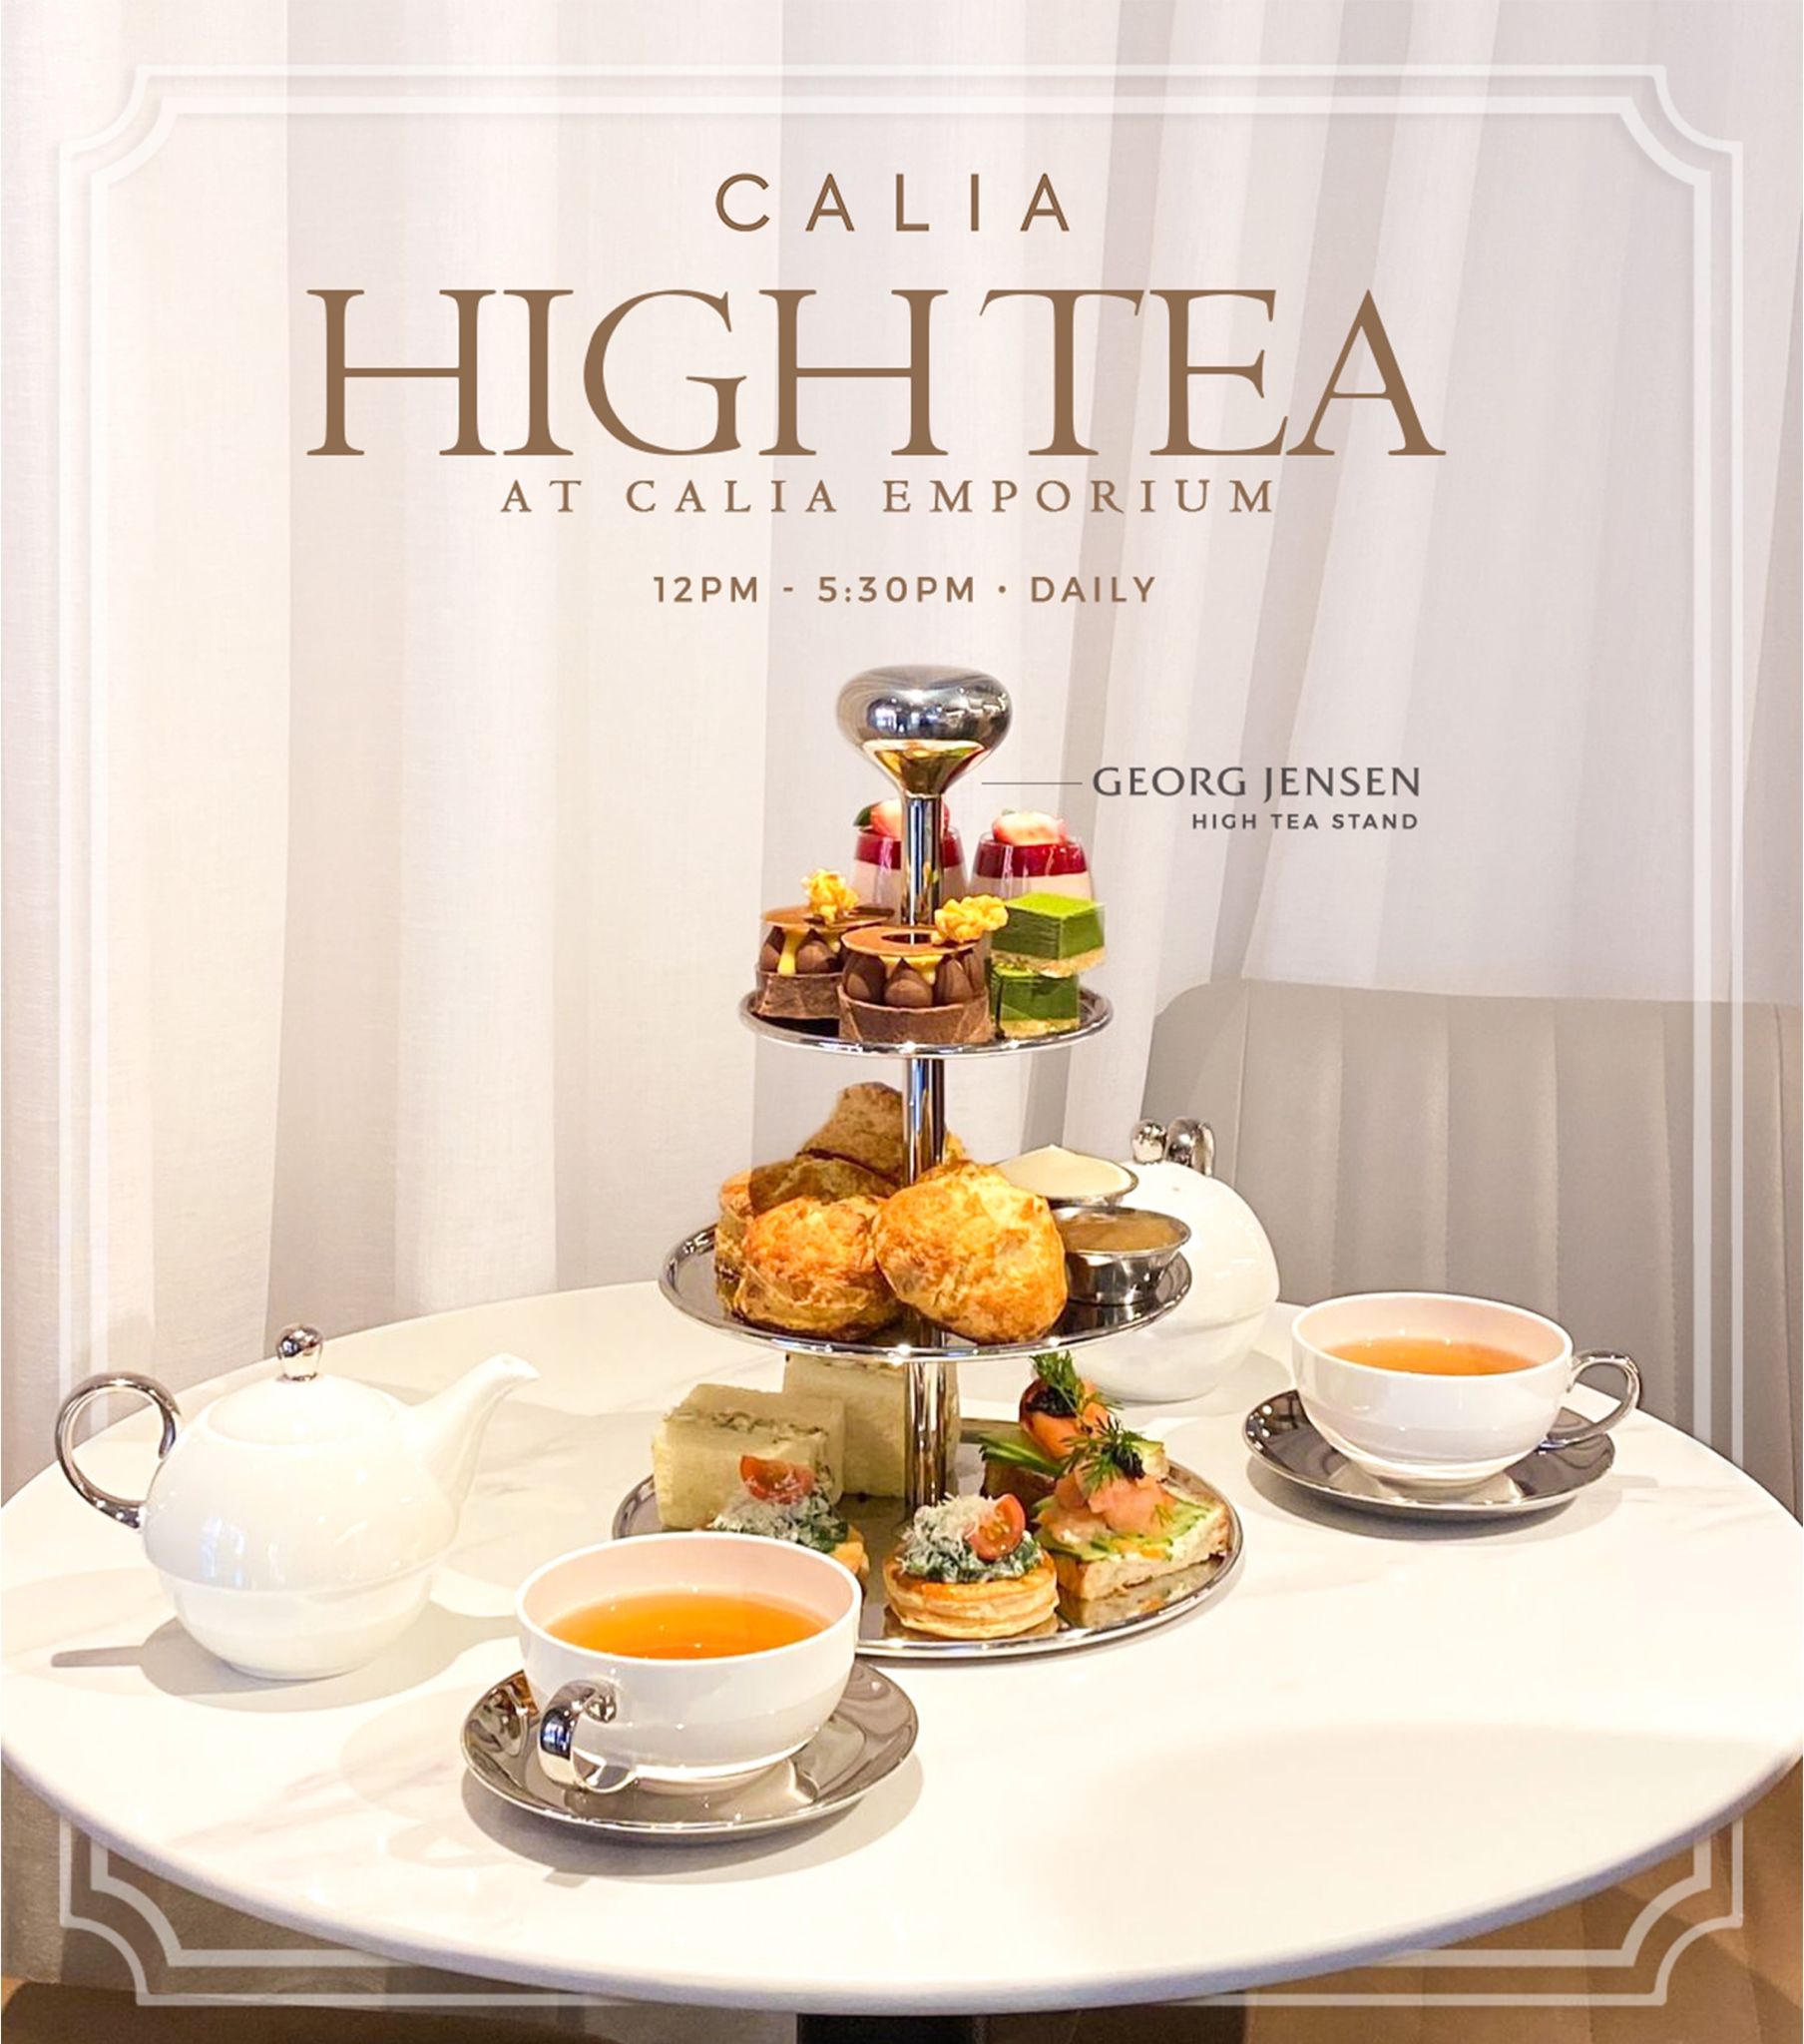 High Tea at Calia Emporium - Calia